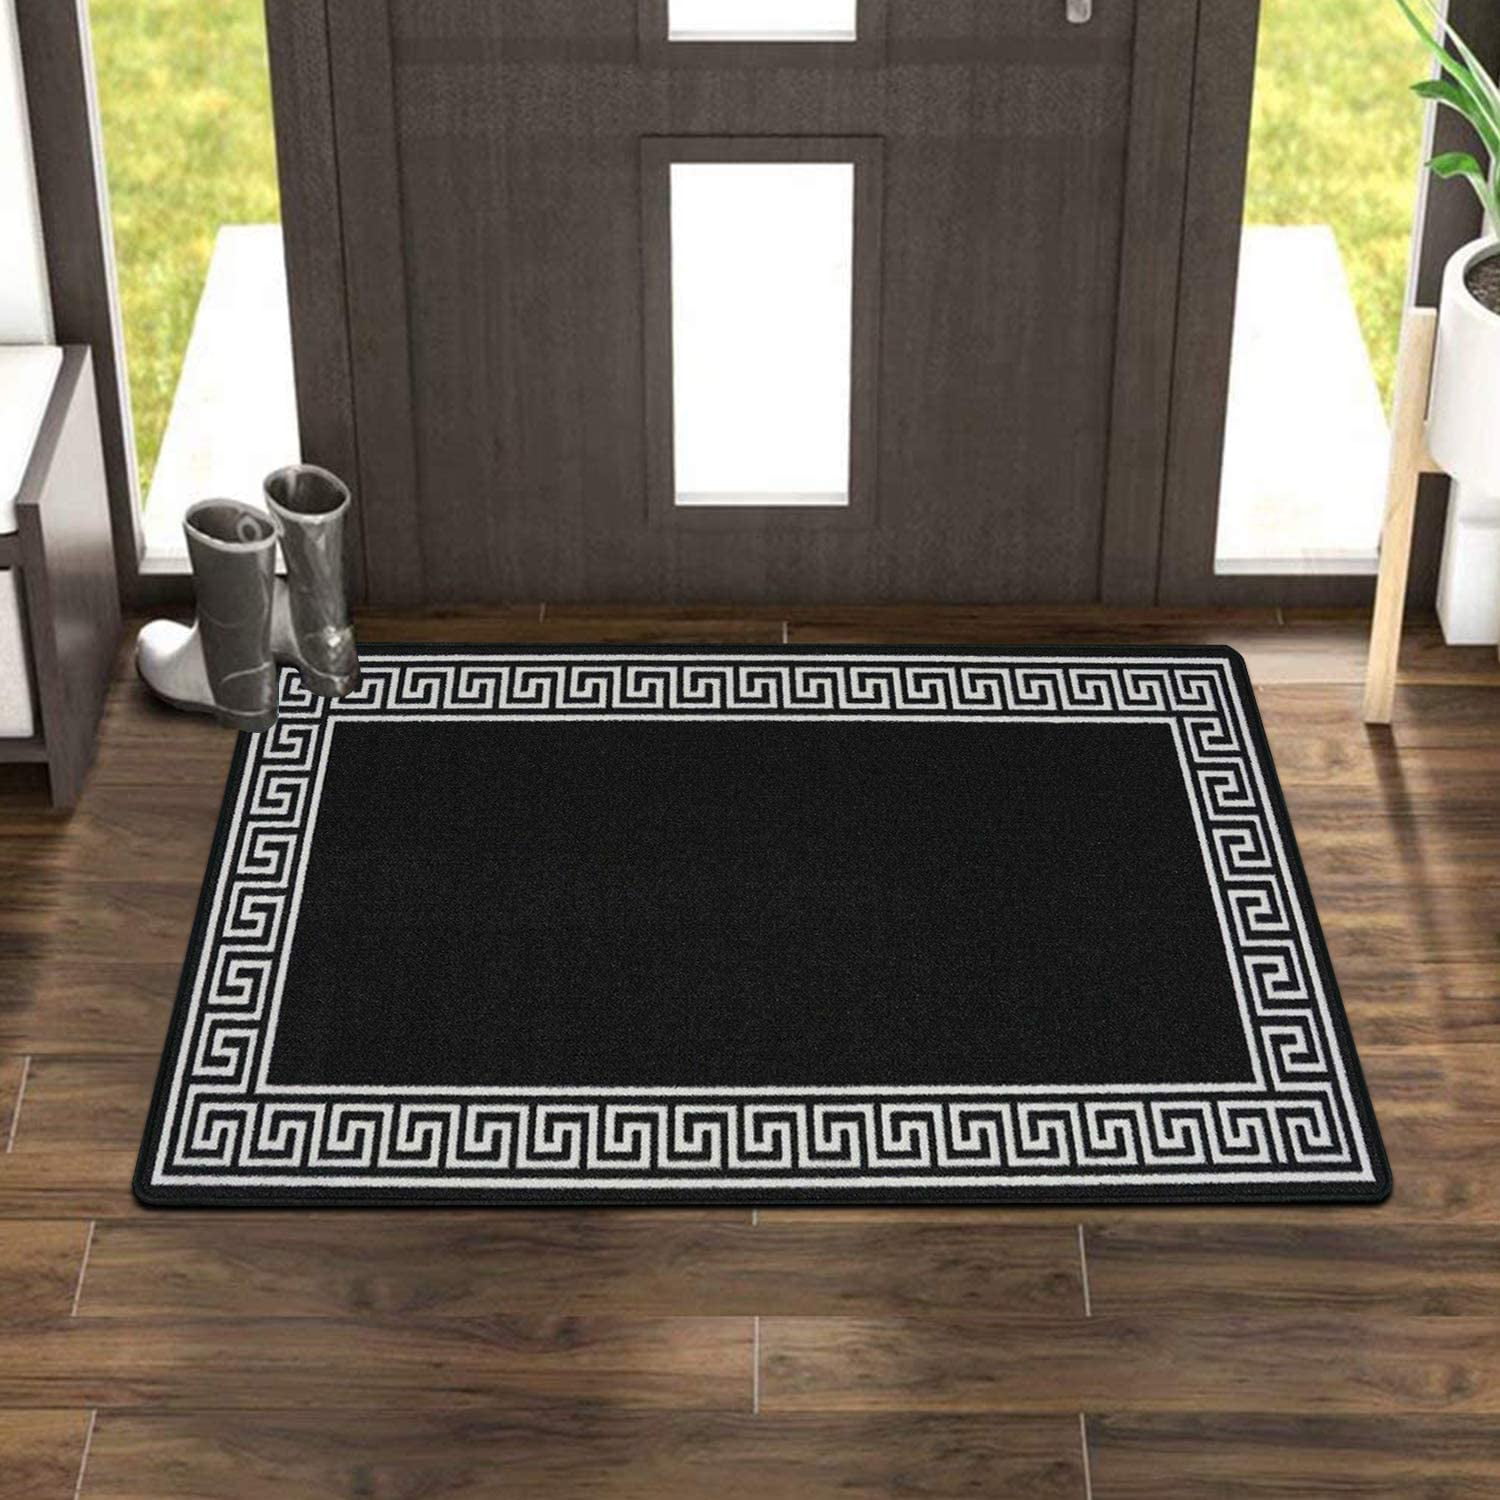 Gel Backed Rug Carpet Runner Non Slip Anti Fungal Mats Large Floor Rug For Room 